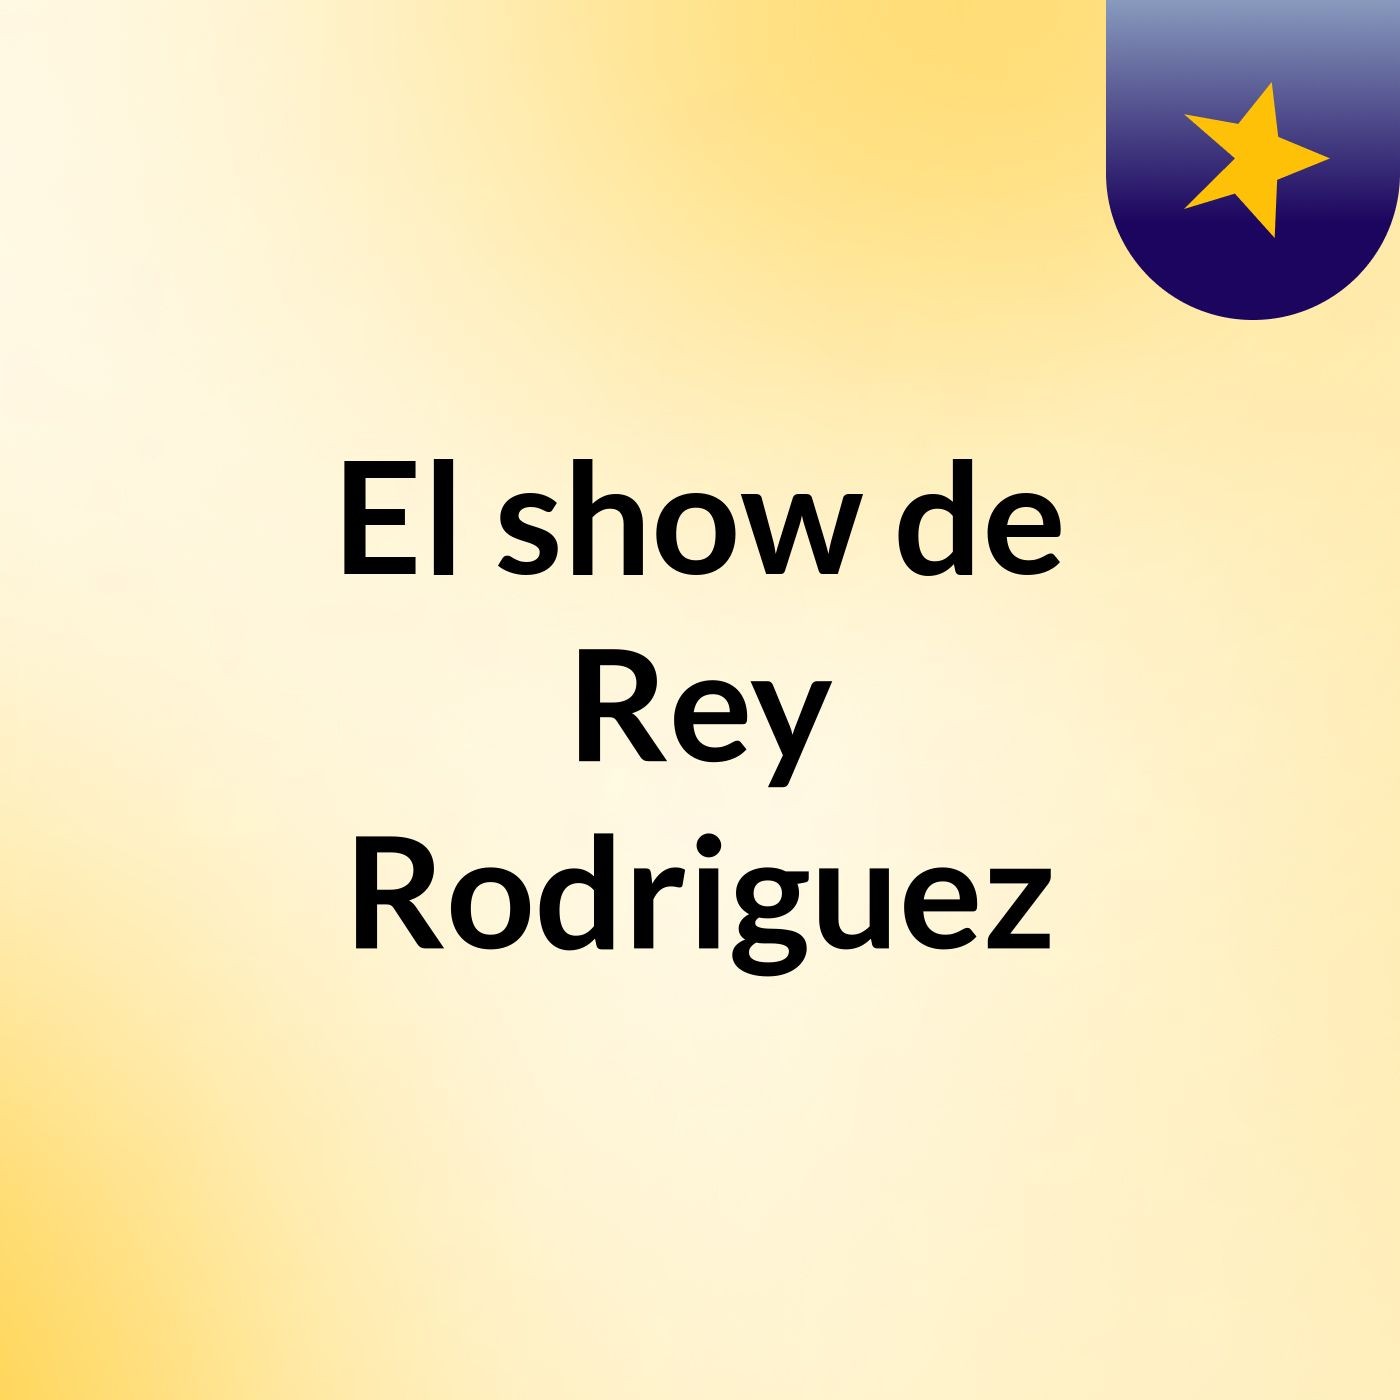 Episodio 4 - El show de Rey Rodriguez